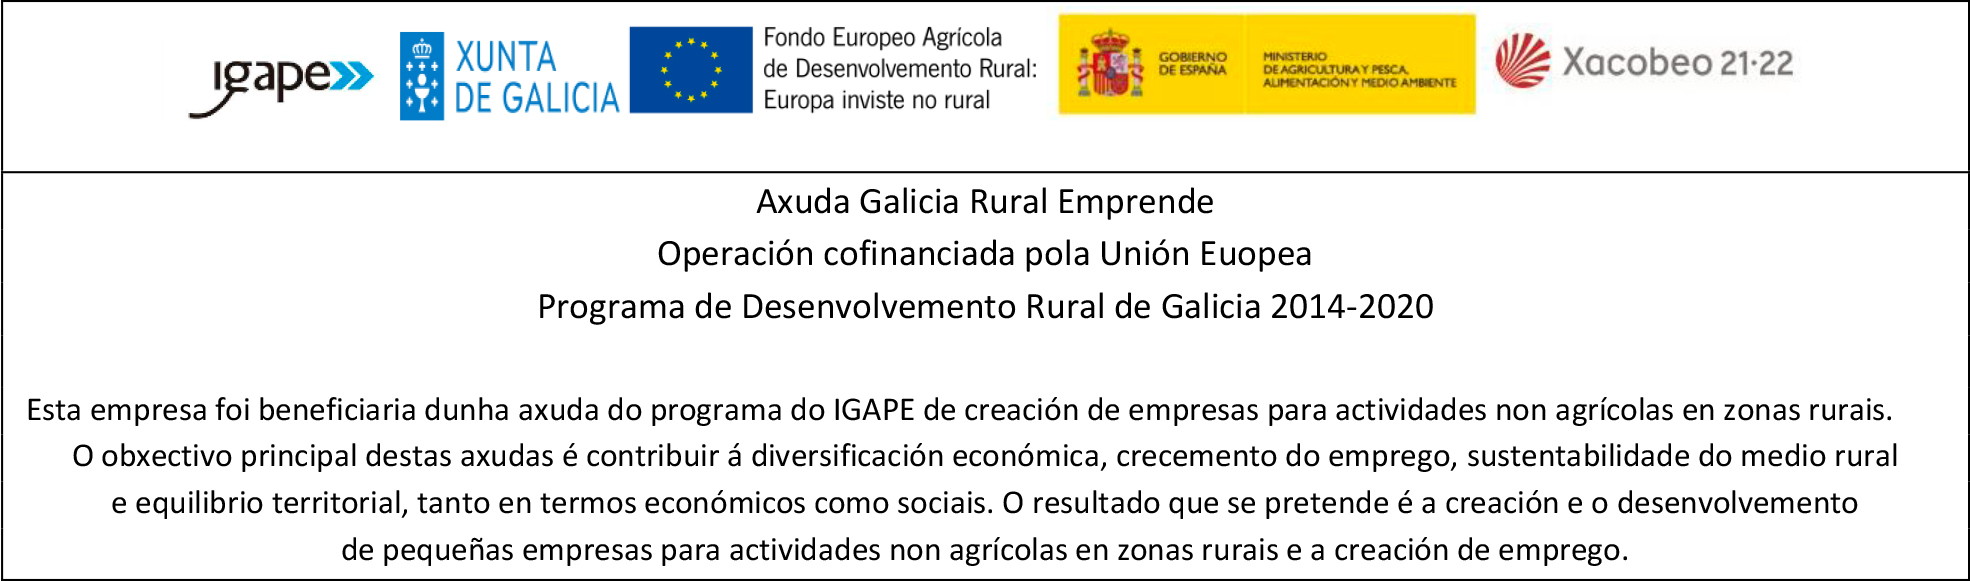 Axuda Galicia Rural Emprende